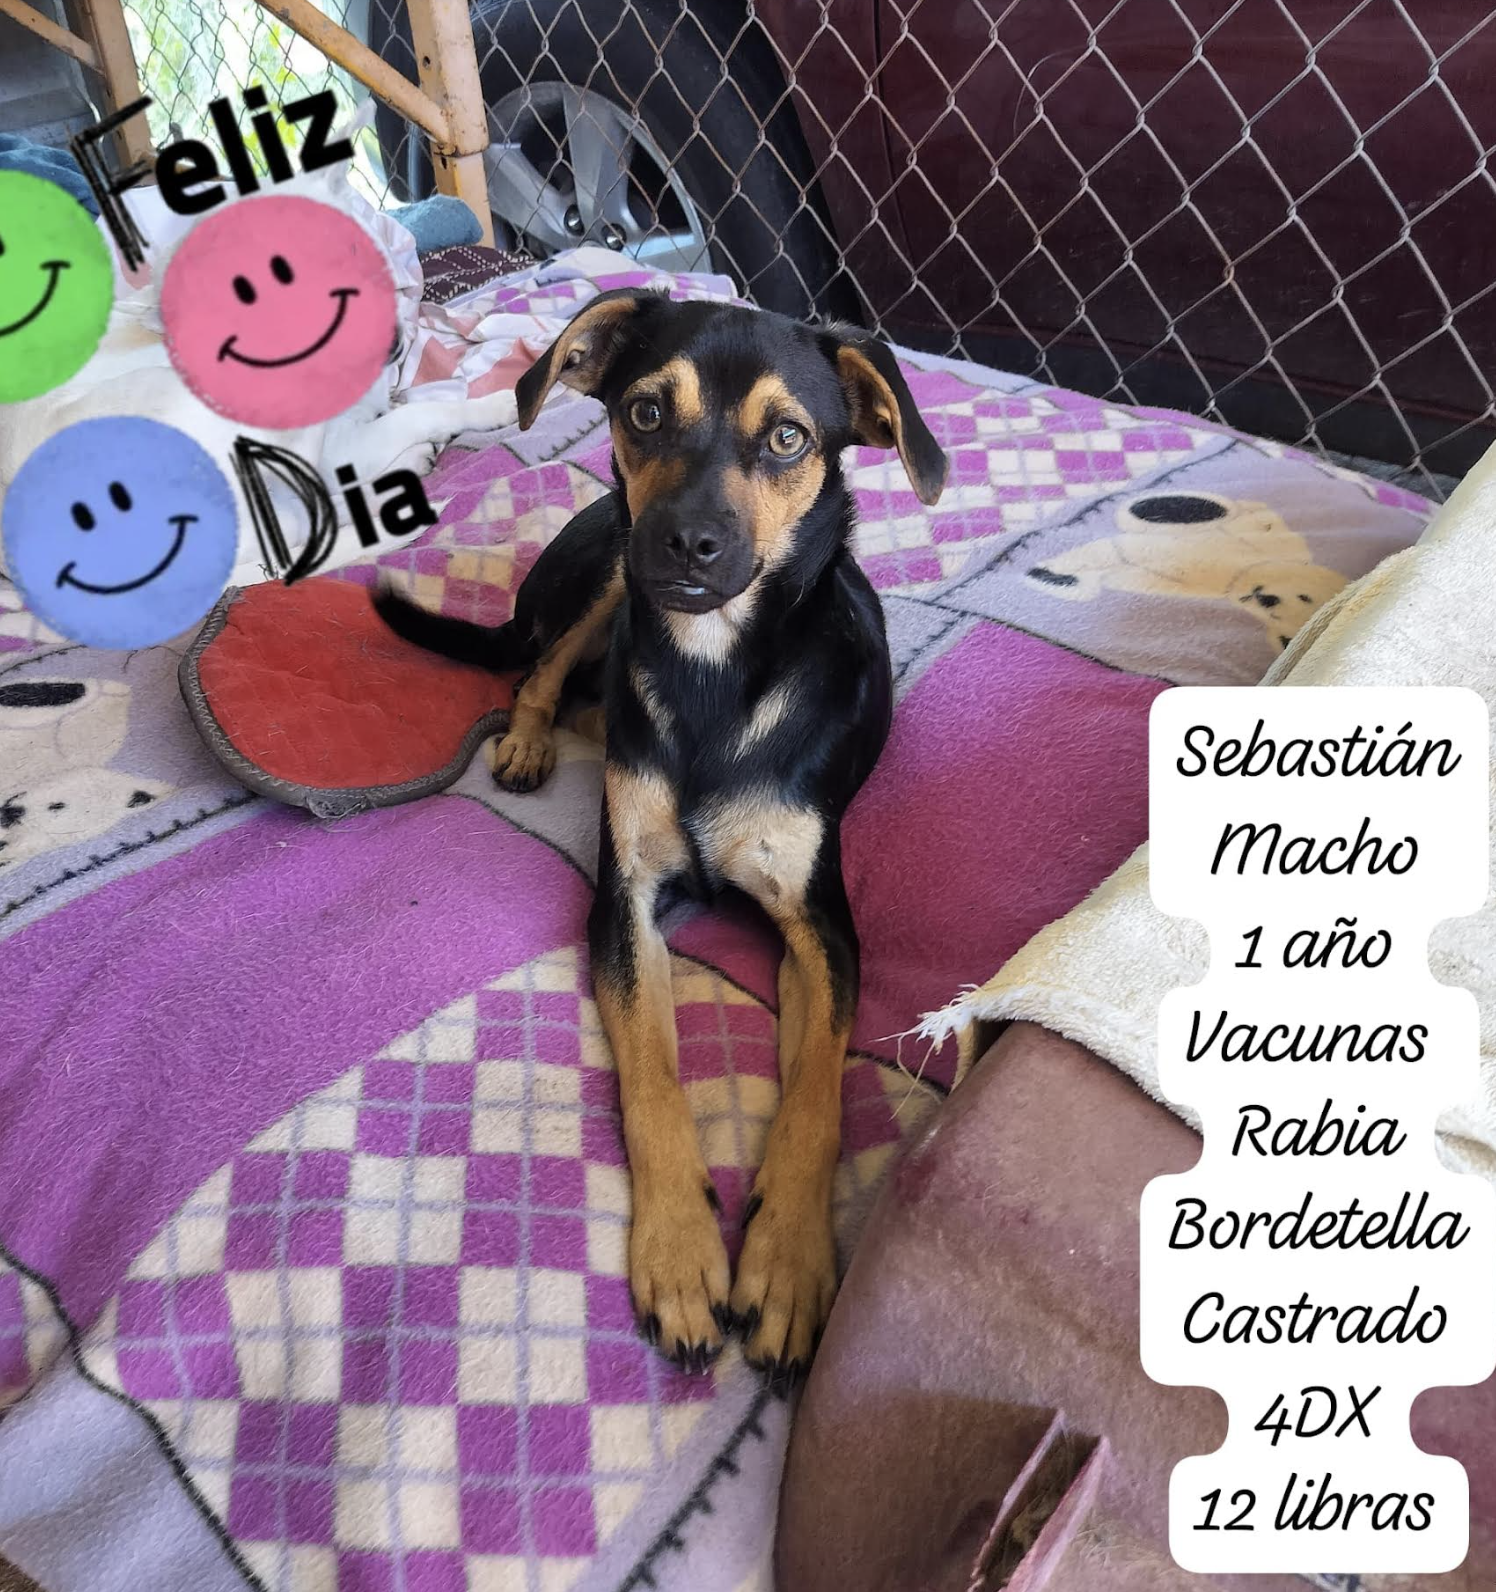 adoptable Dog in Rincon, PR named Sebas